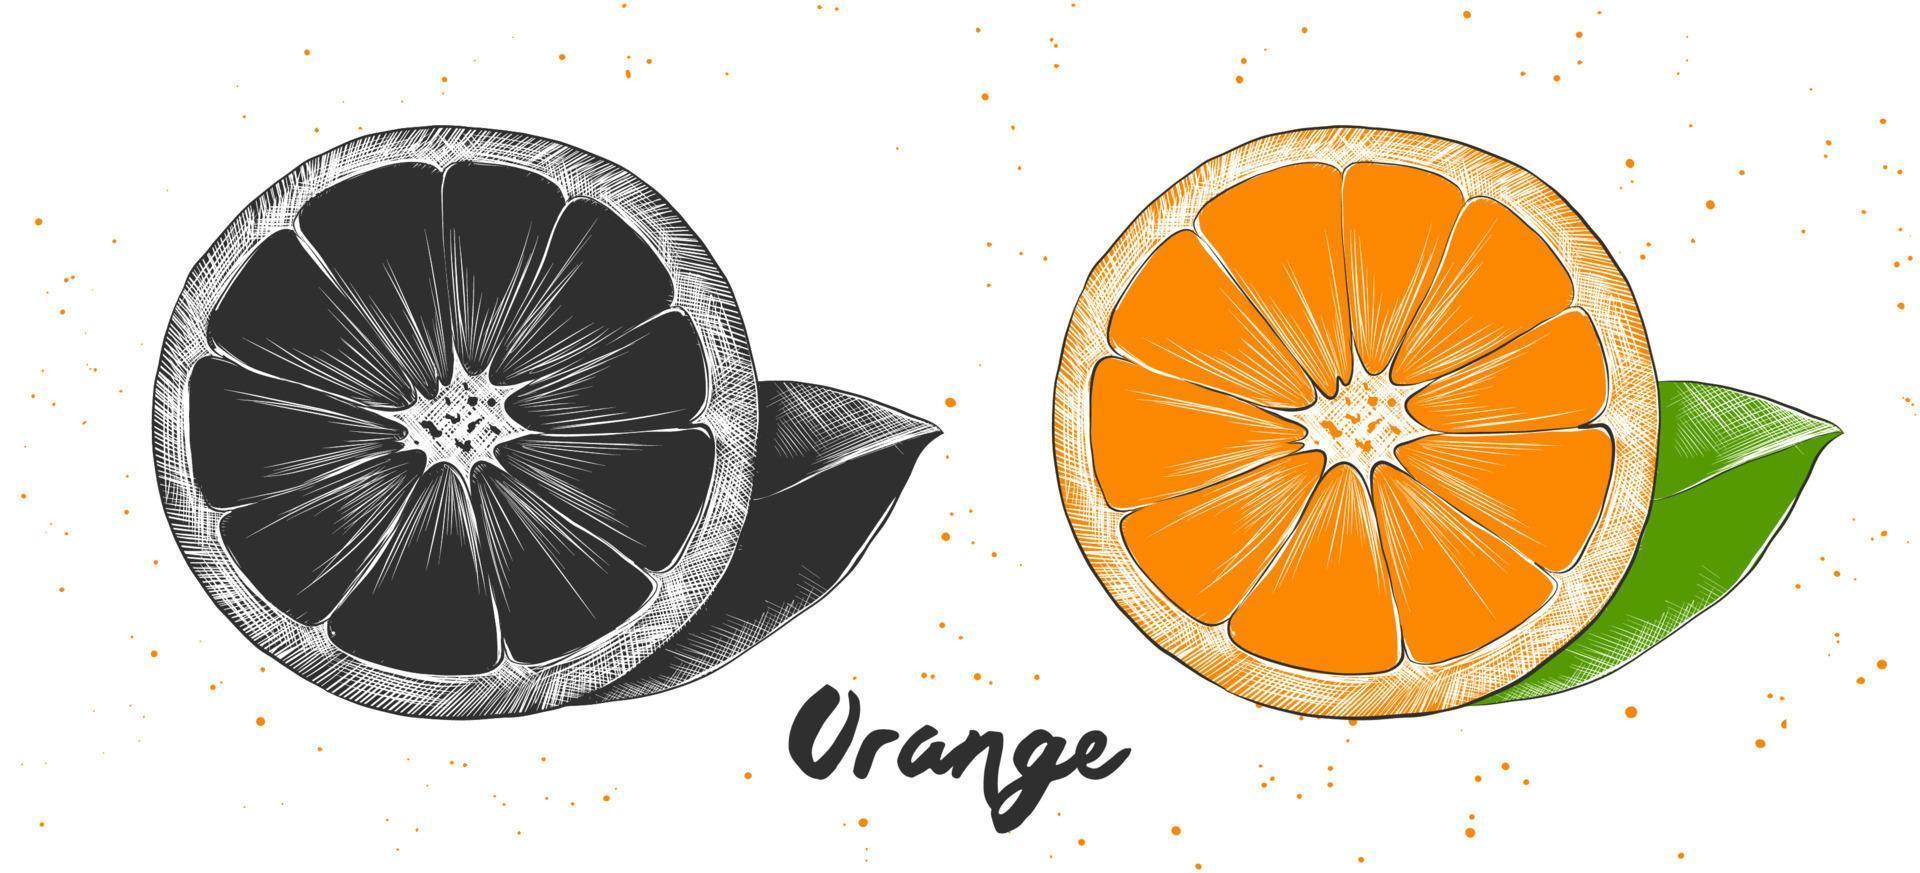 illustration de style gravé de vecteur pour les affiches, la décoration et l'impression. croquis dessiné à la main d'orange en monochrome et coloré. dessin détaillé de nourriture végétarienne.